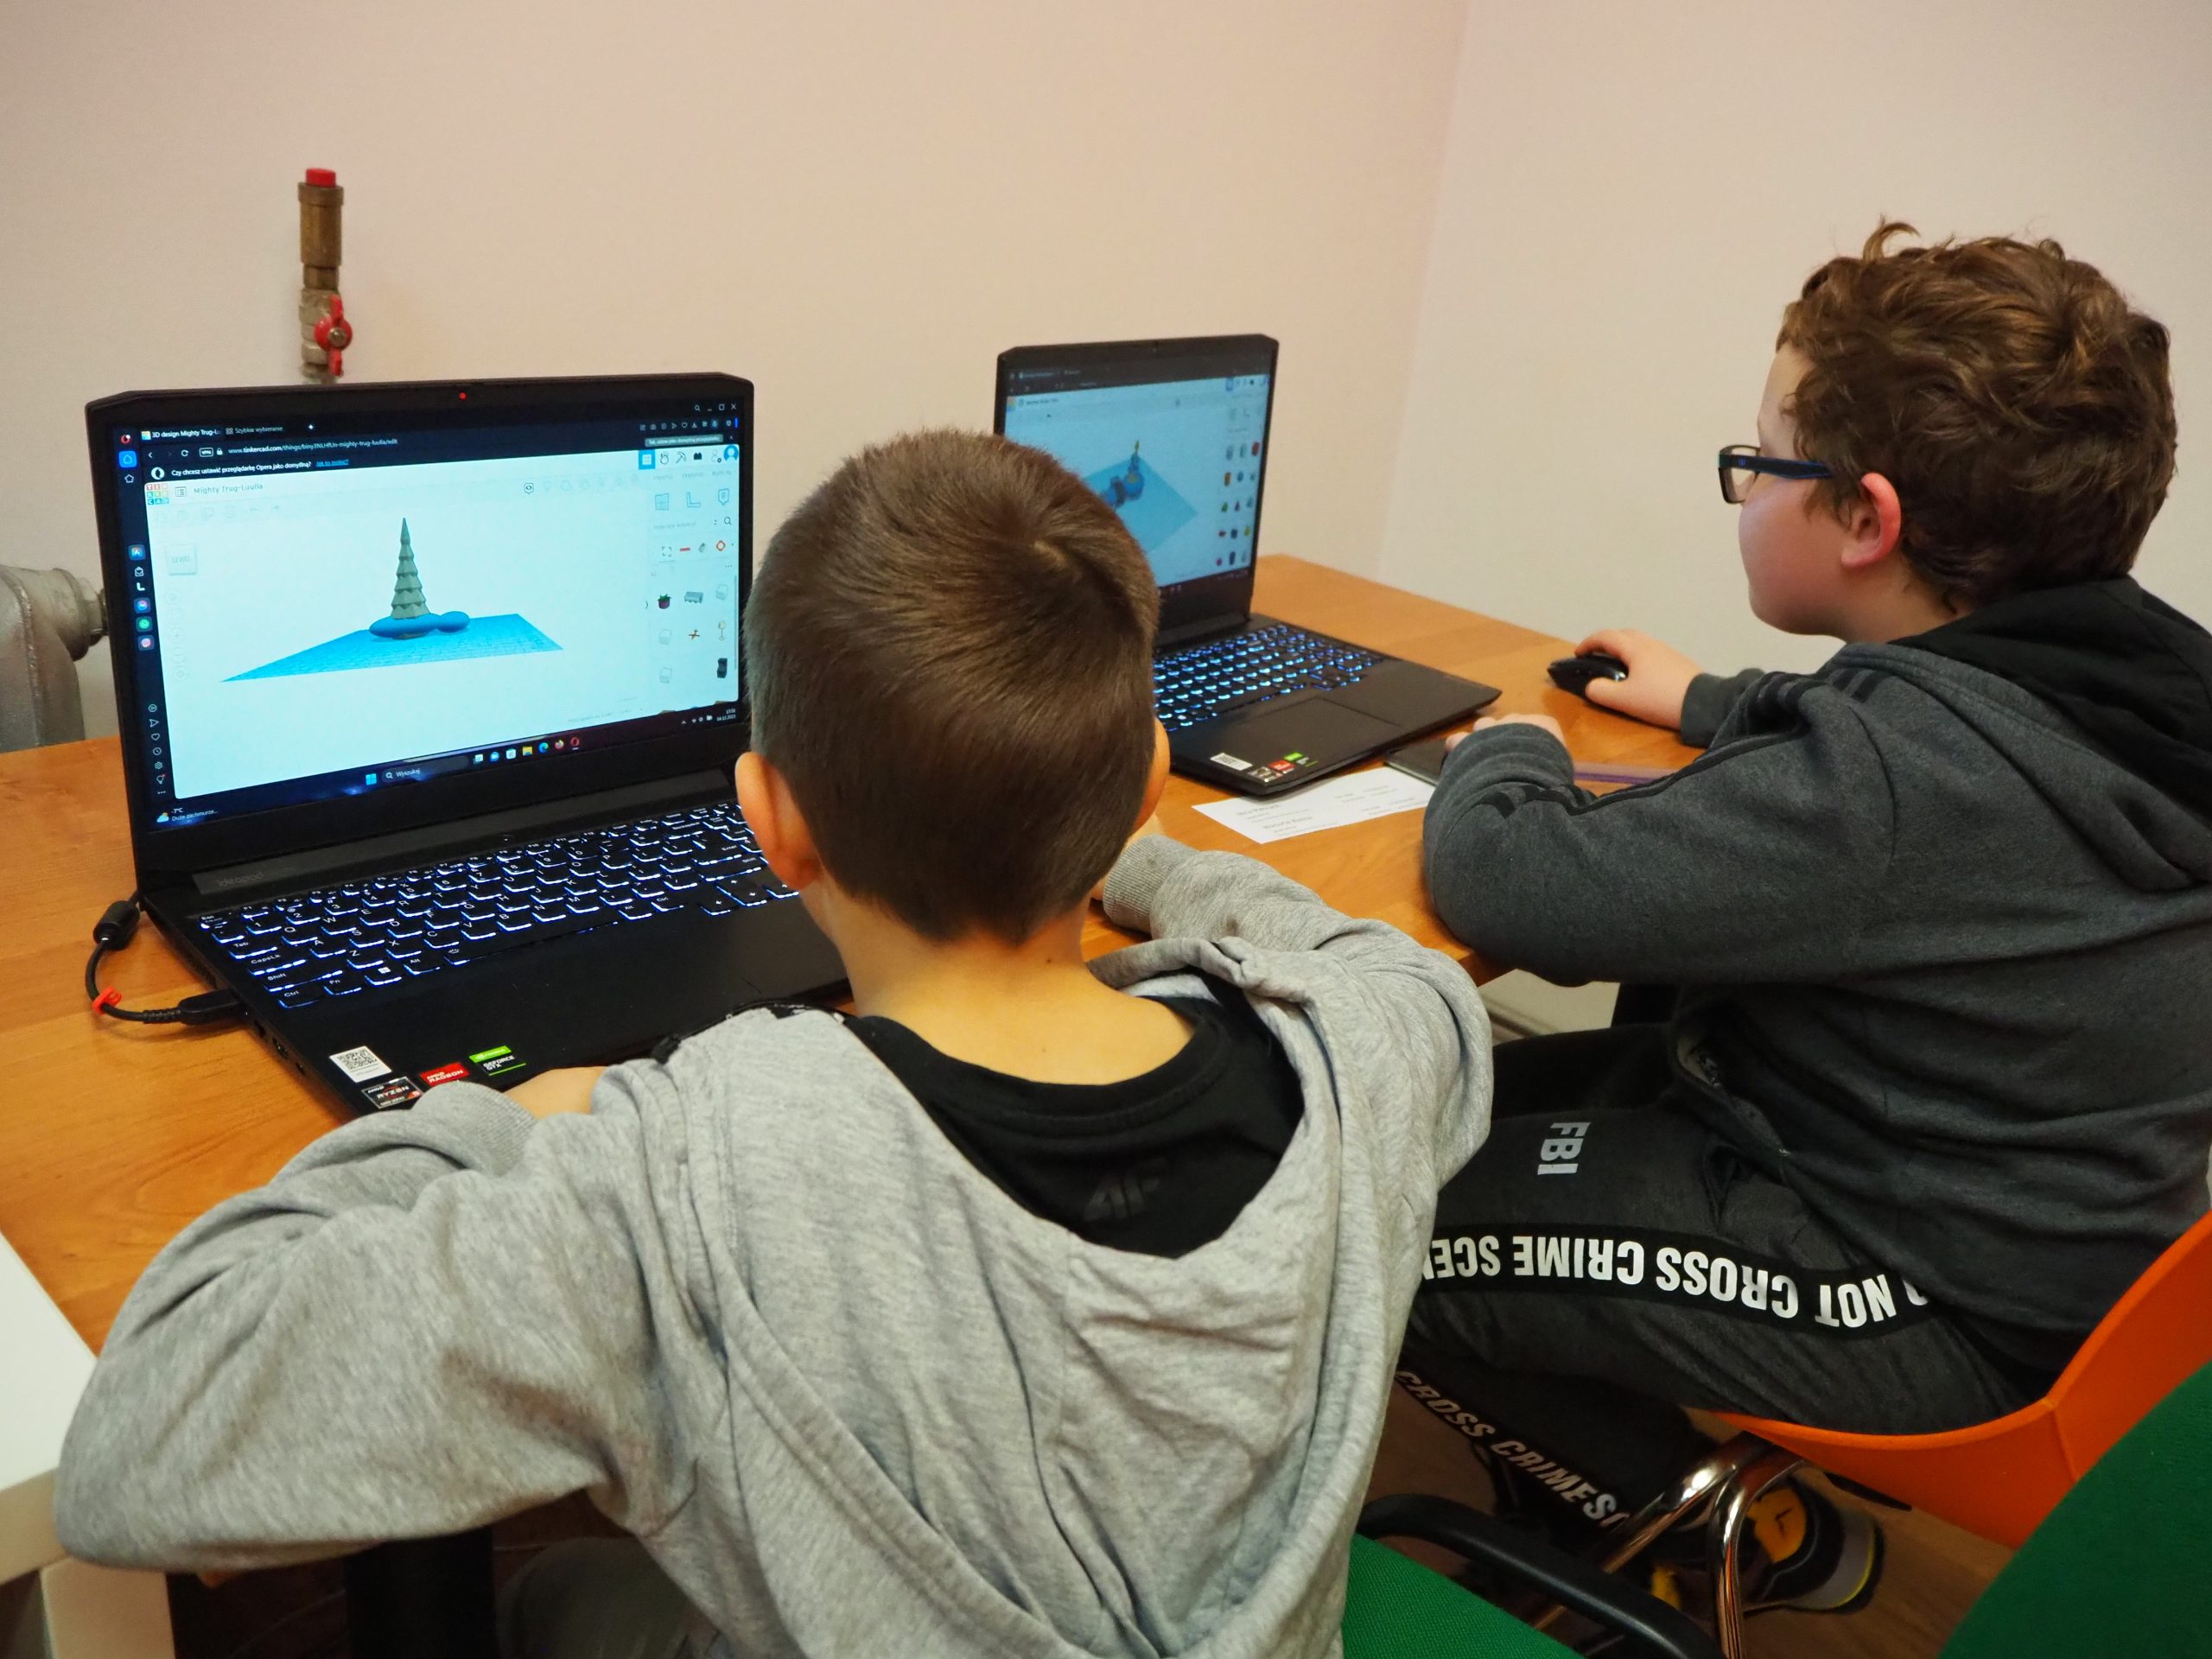 Dwaj chłopcy siedzący przy komputerach.